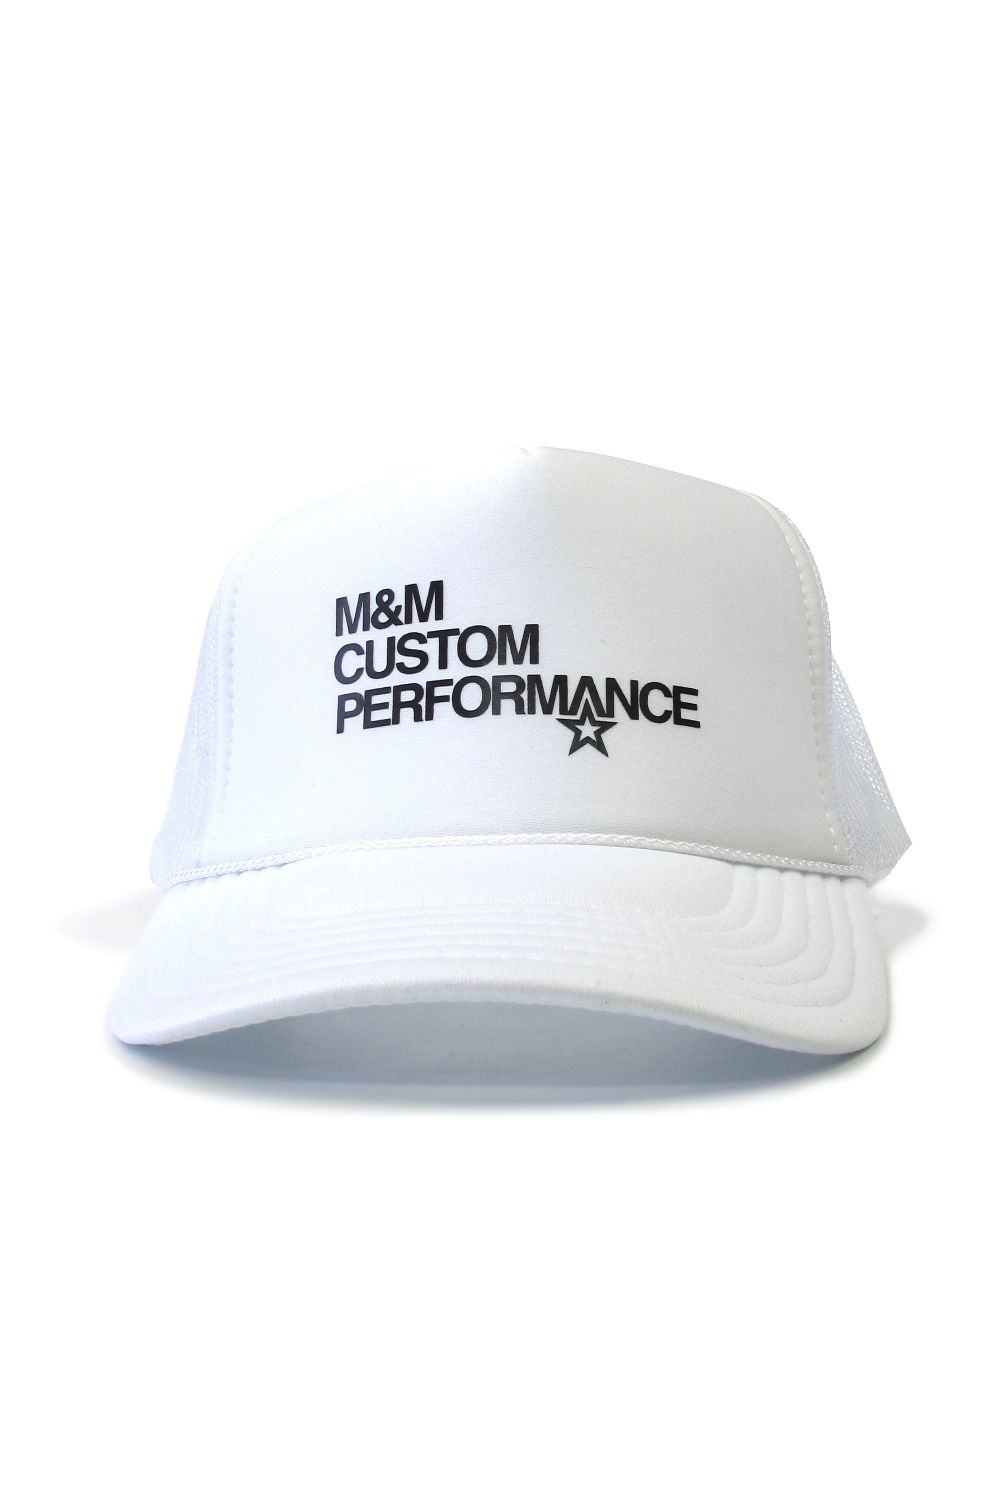 M&M CUSTOM PERFORMANCE - PRINT MESH CAP (OLIVE) / プリントメッシュ 